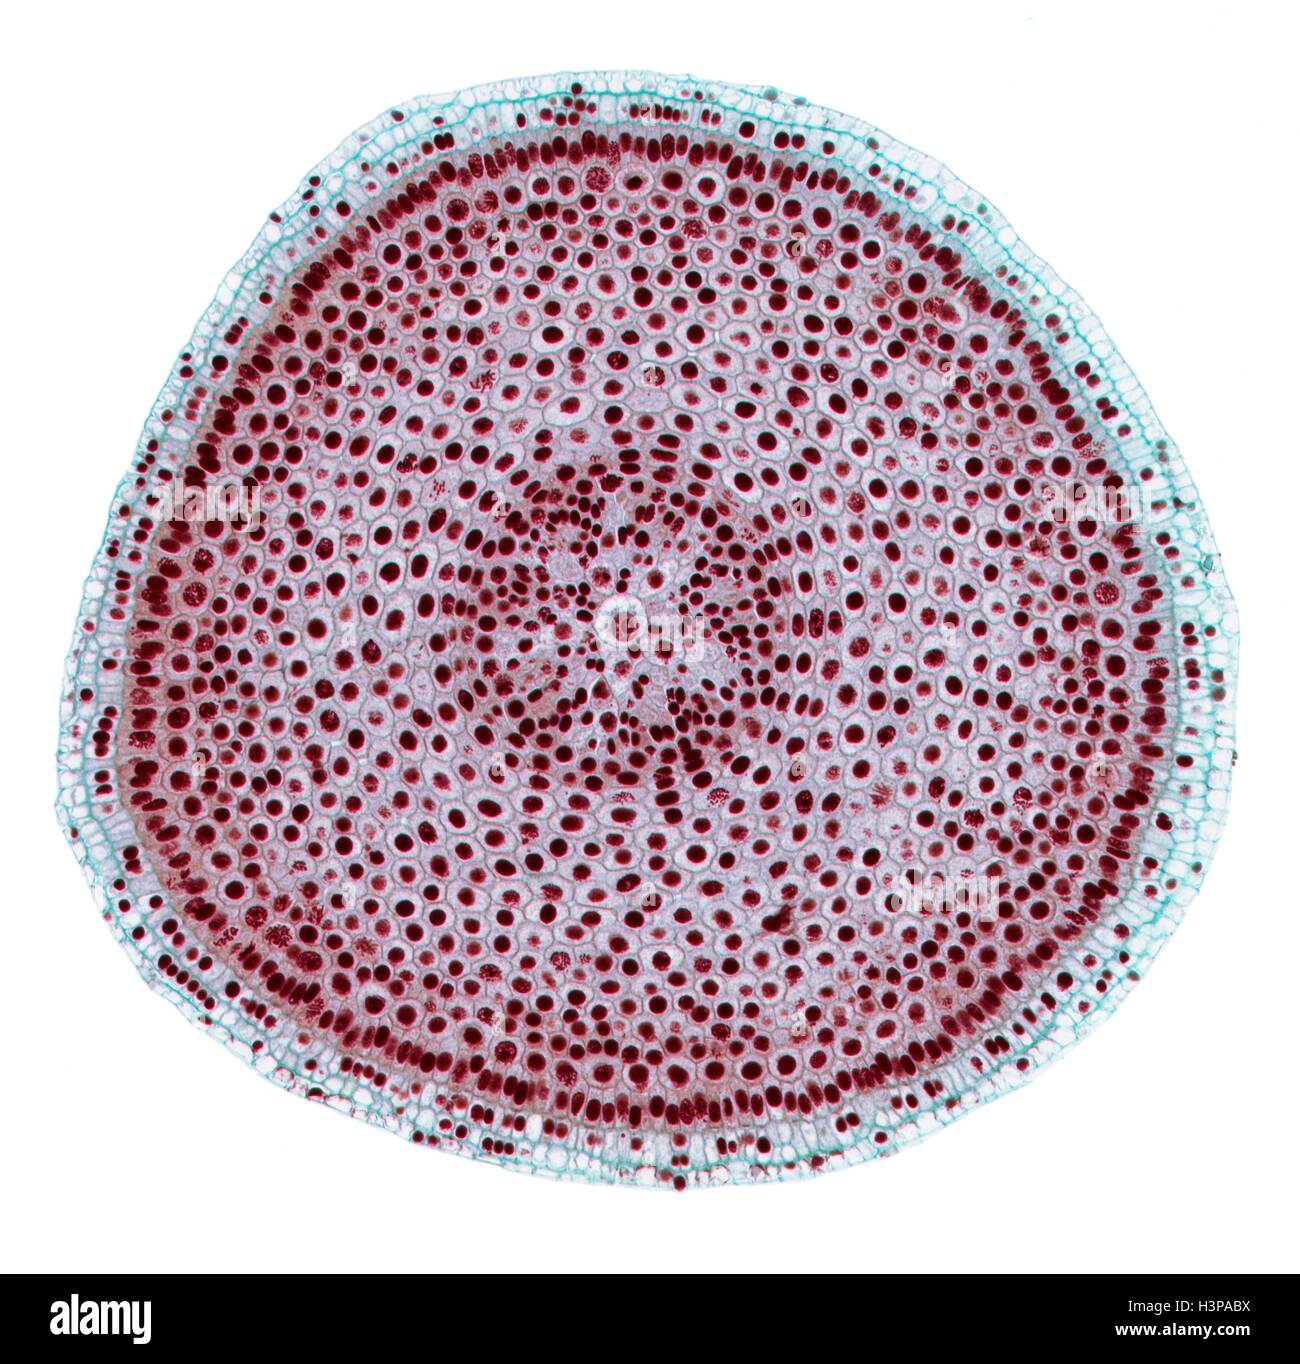 Mitose. Leichte Schliffbild (LM) der ein Querschnitt der Zwiebel (Allium Cepa) Wurzelspitze zeigen Zellen in Mitose (nuclear Division). Vergrößerung: X100 wenn bei 10 cm breite gedruckt. Stockfoto